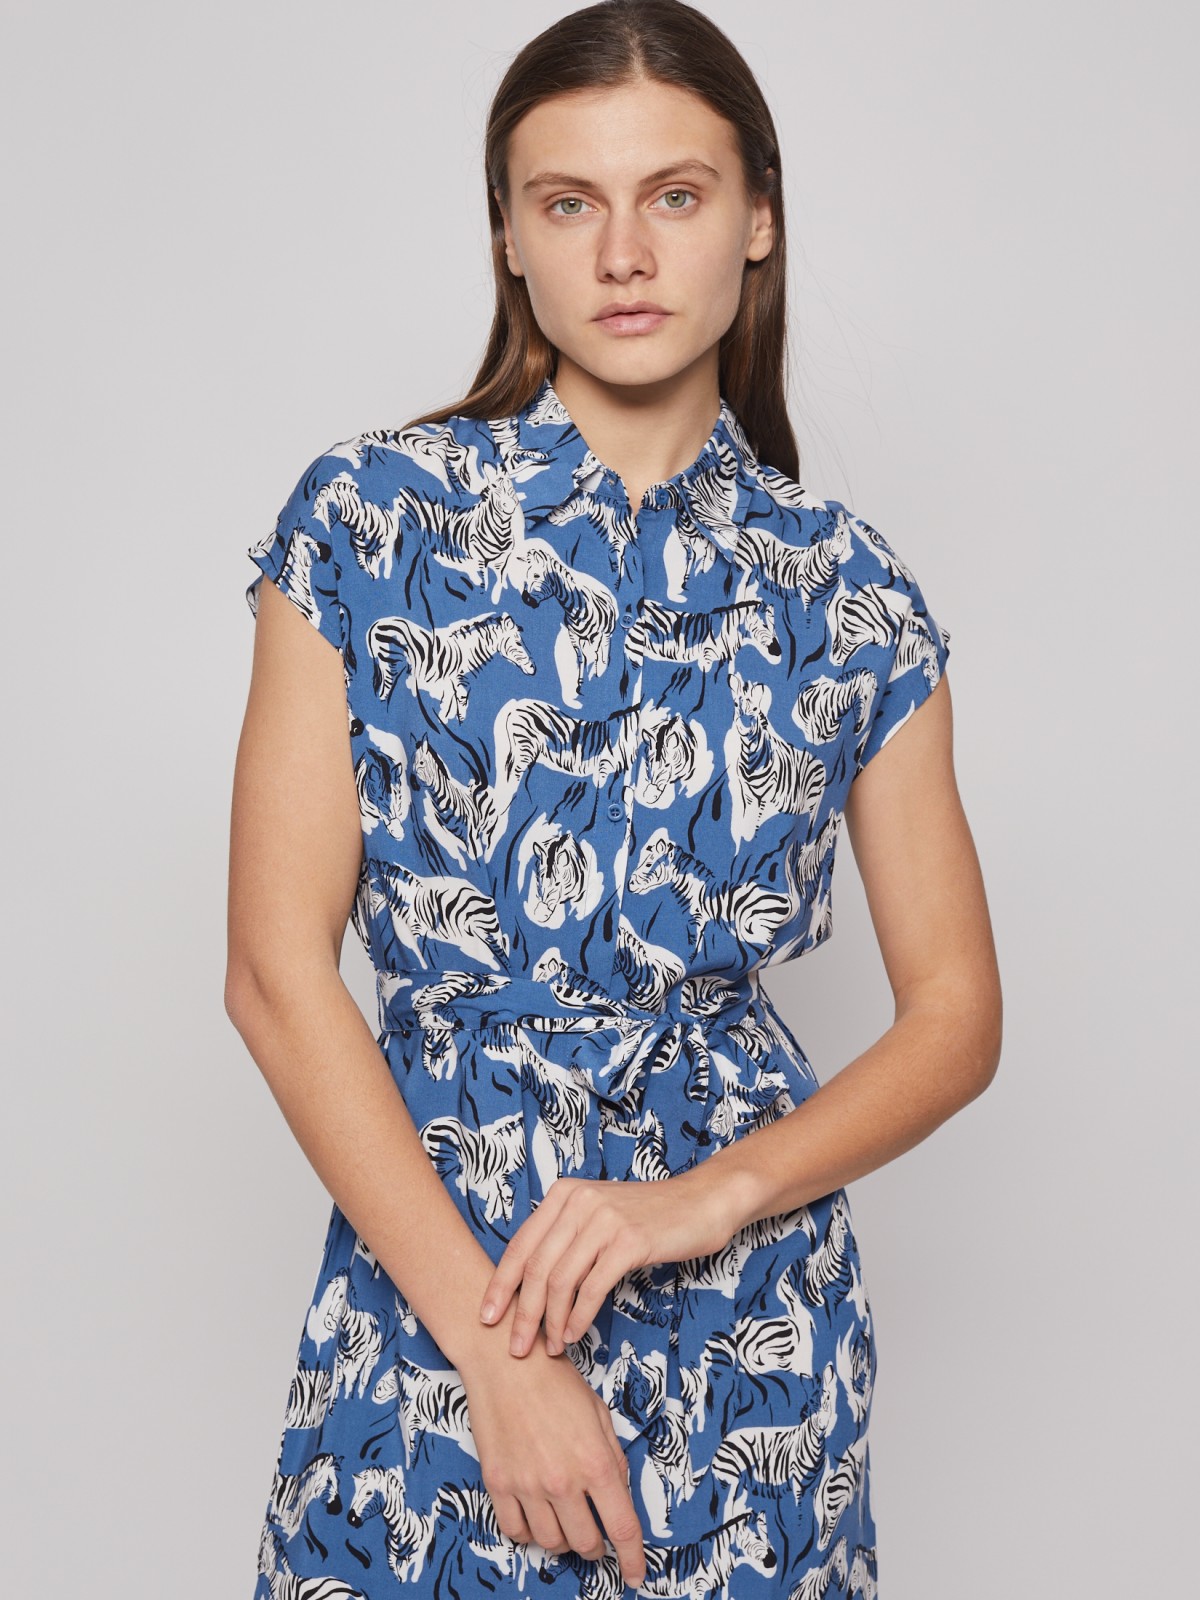 Принтованное платье-рубашка с поясом zolla 02223824Y073, цвет голубой, размер S - фото 4